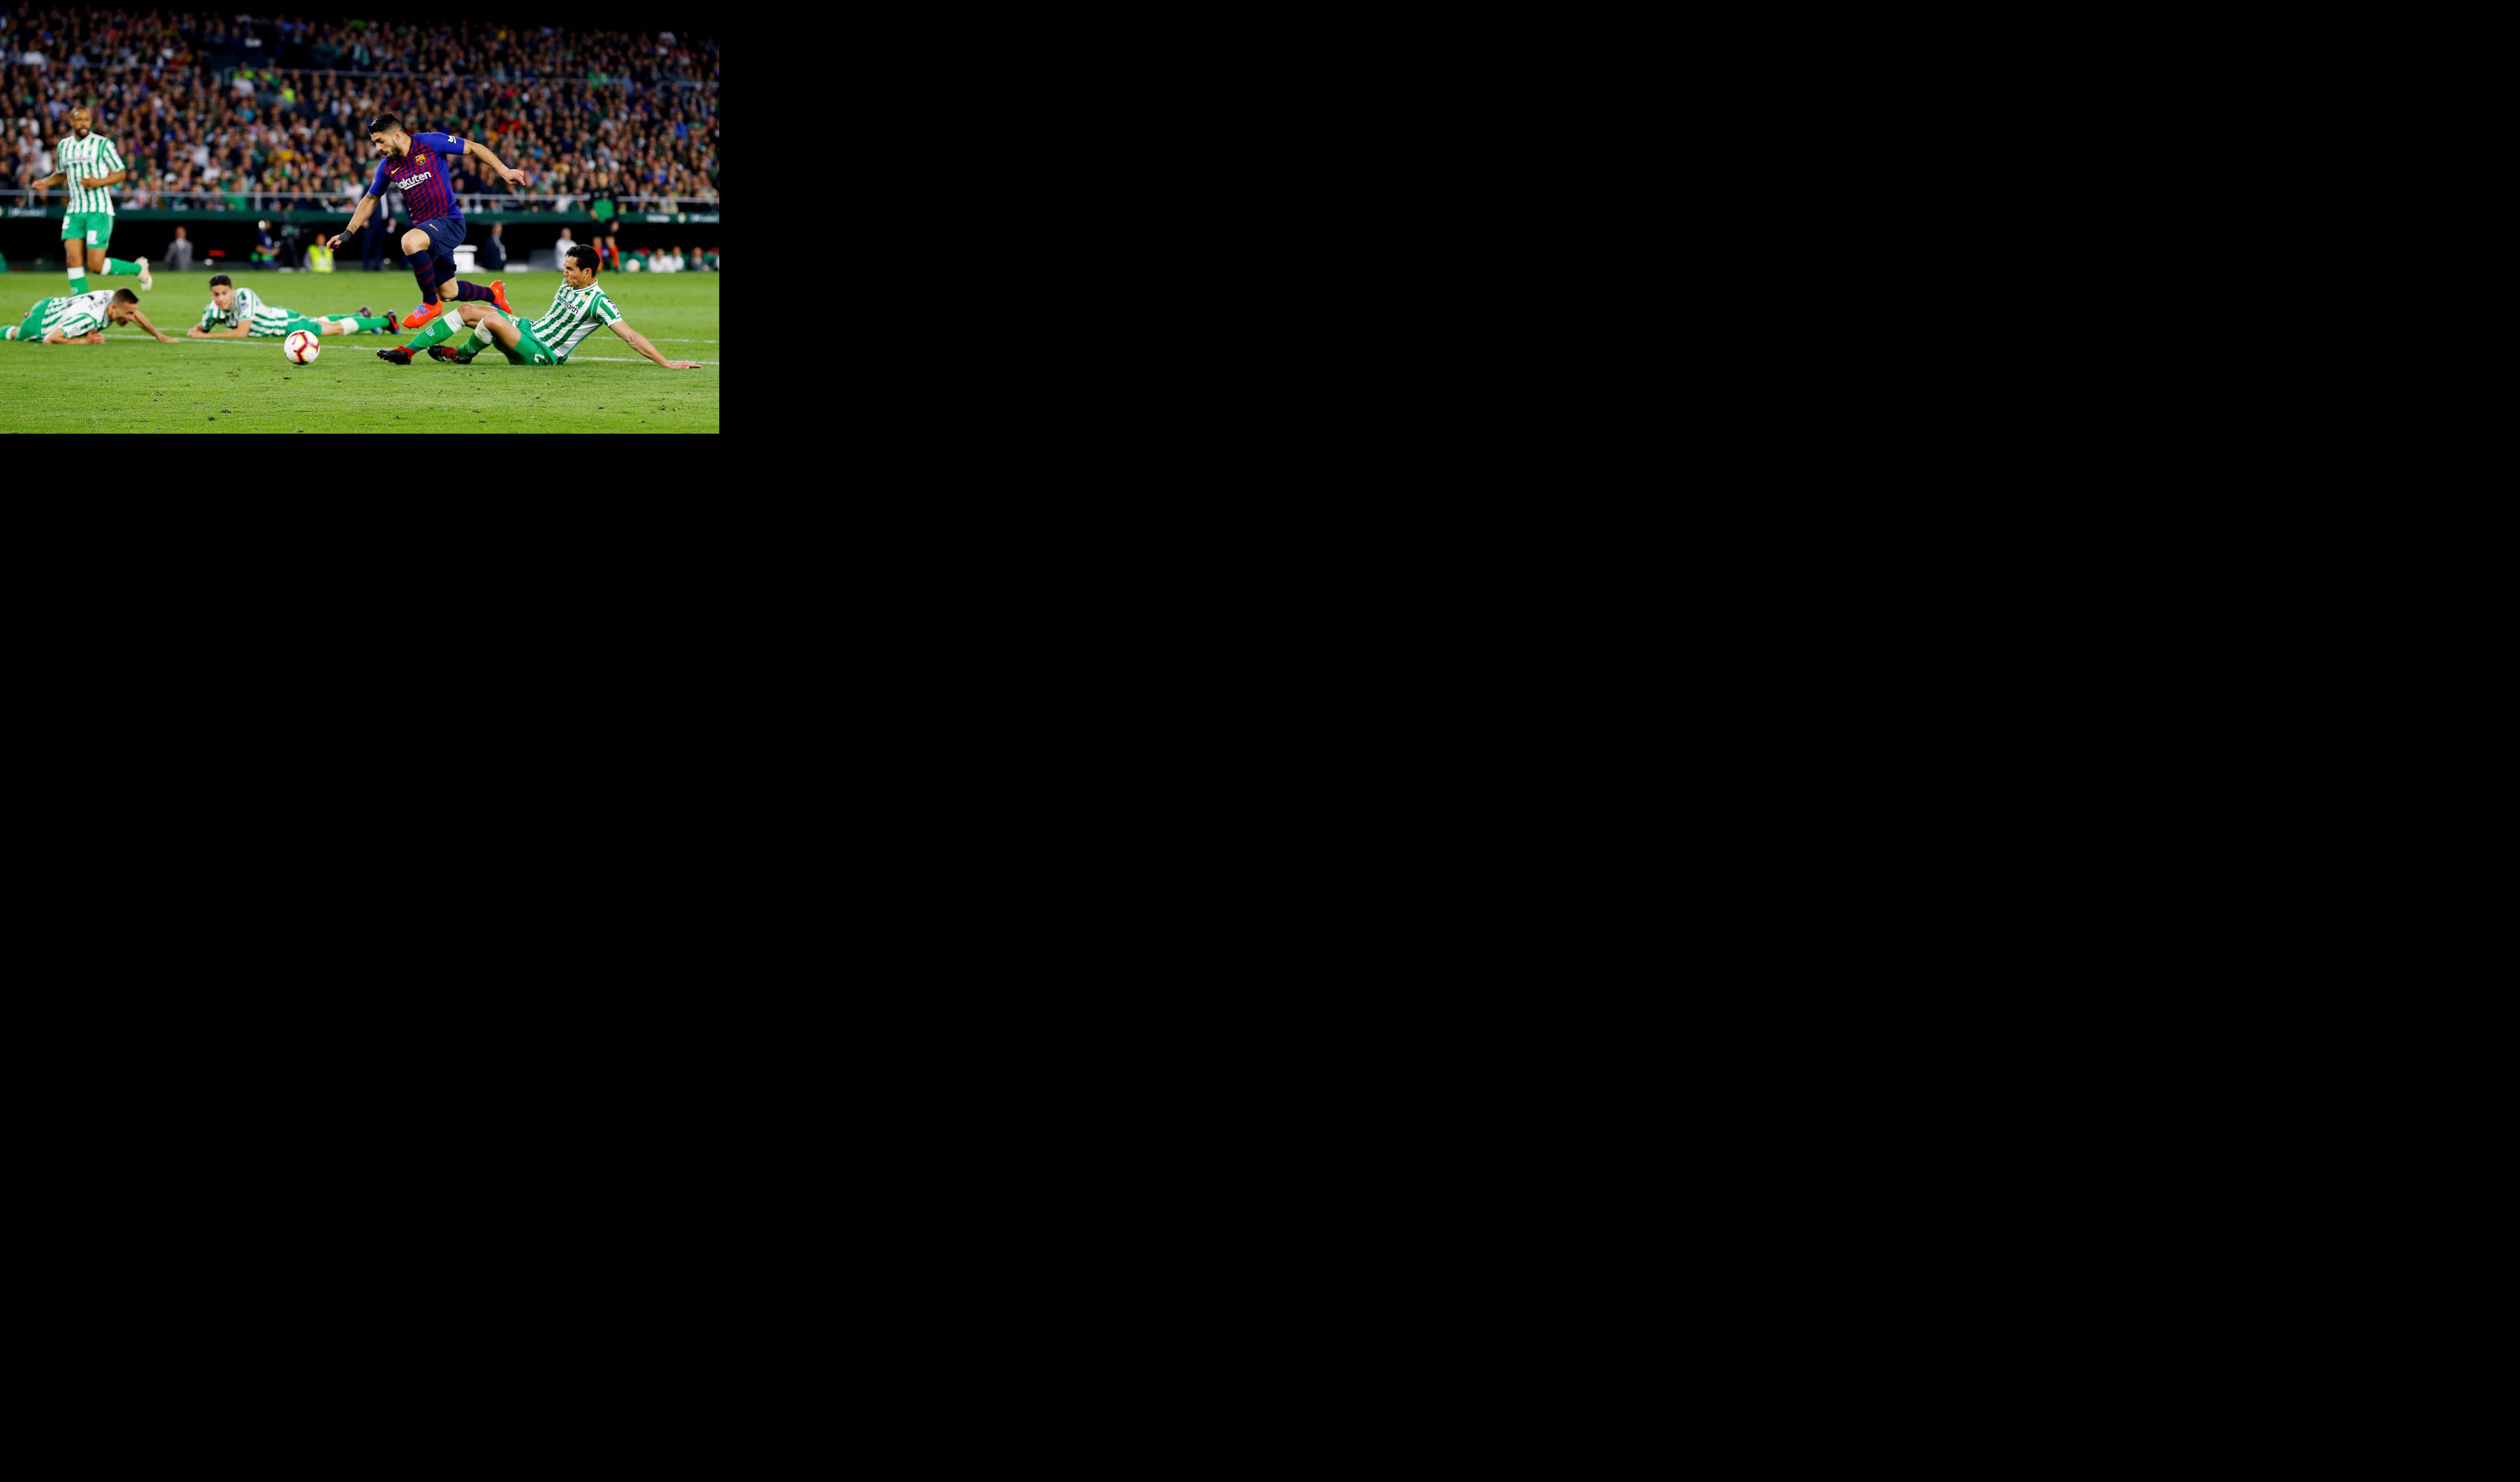 (VIDEO) POLOMILI VRATOVE I NISU GA STIGLI! Igrači Betisa padali kao pokošeni pred driblinzima Luisa Suareza